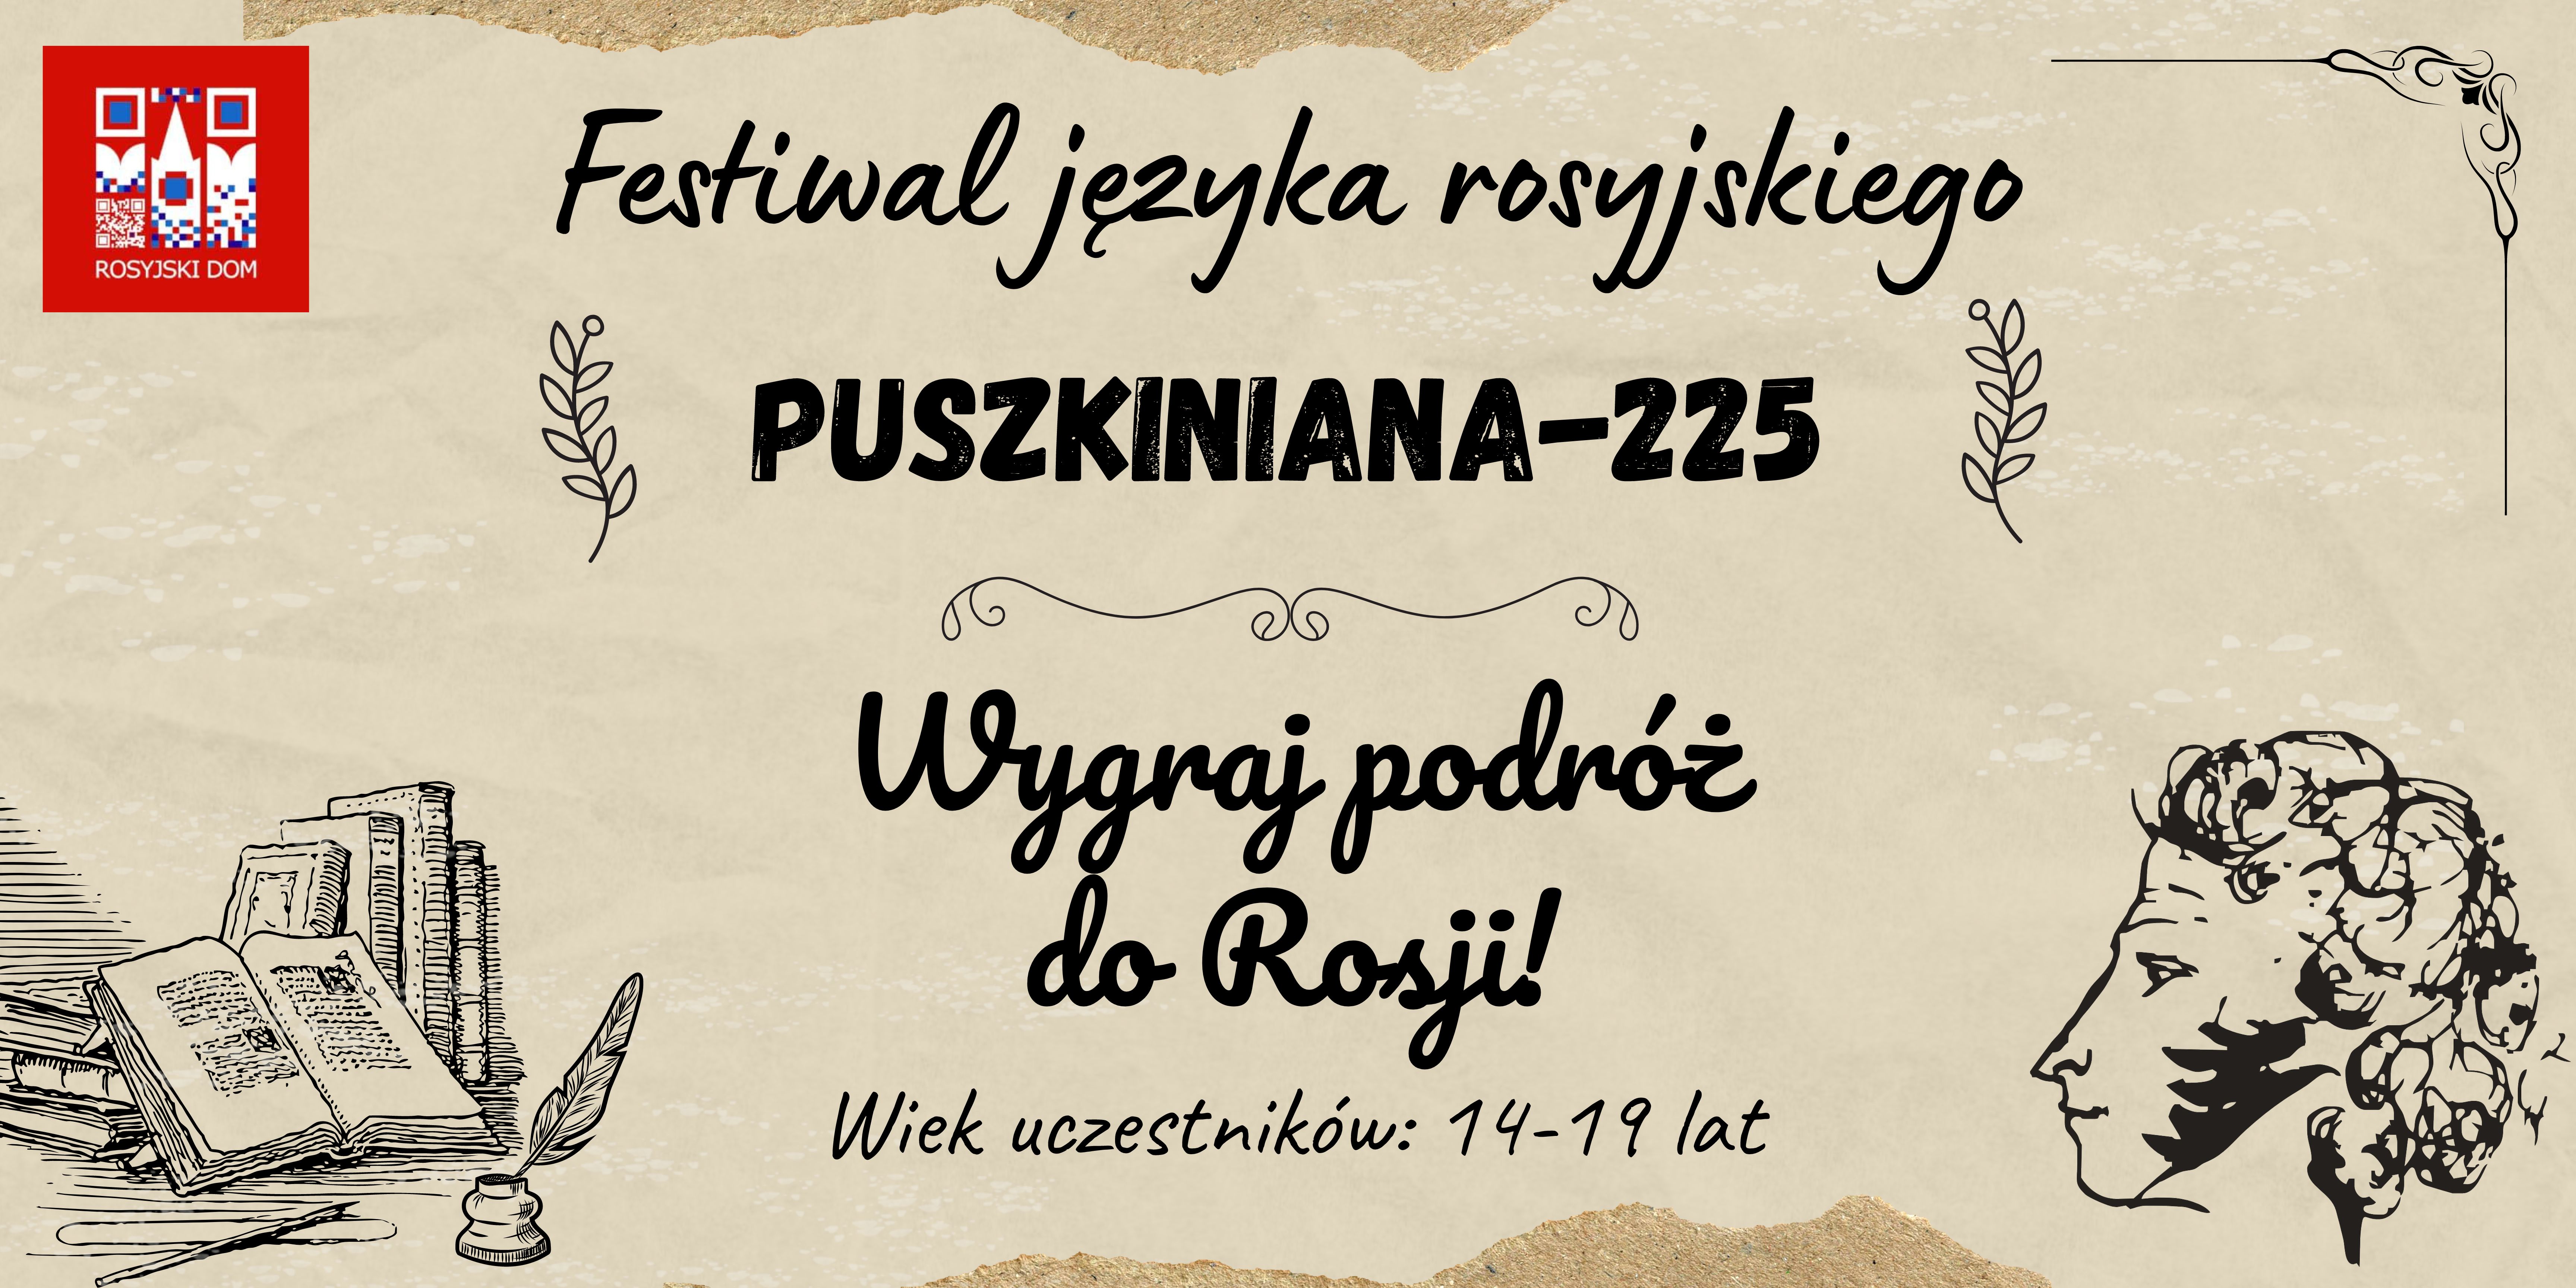 Festiwal języka rosyjskiego "PUSZKINIANA-225"